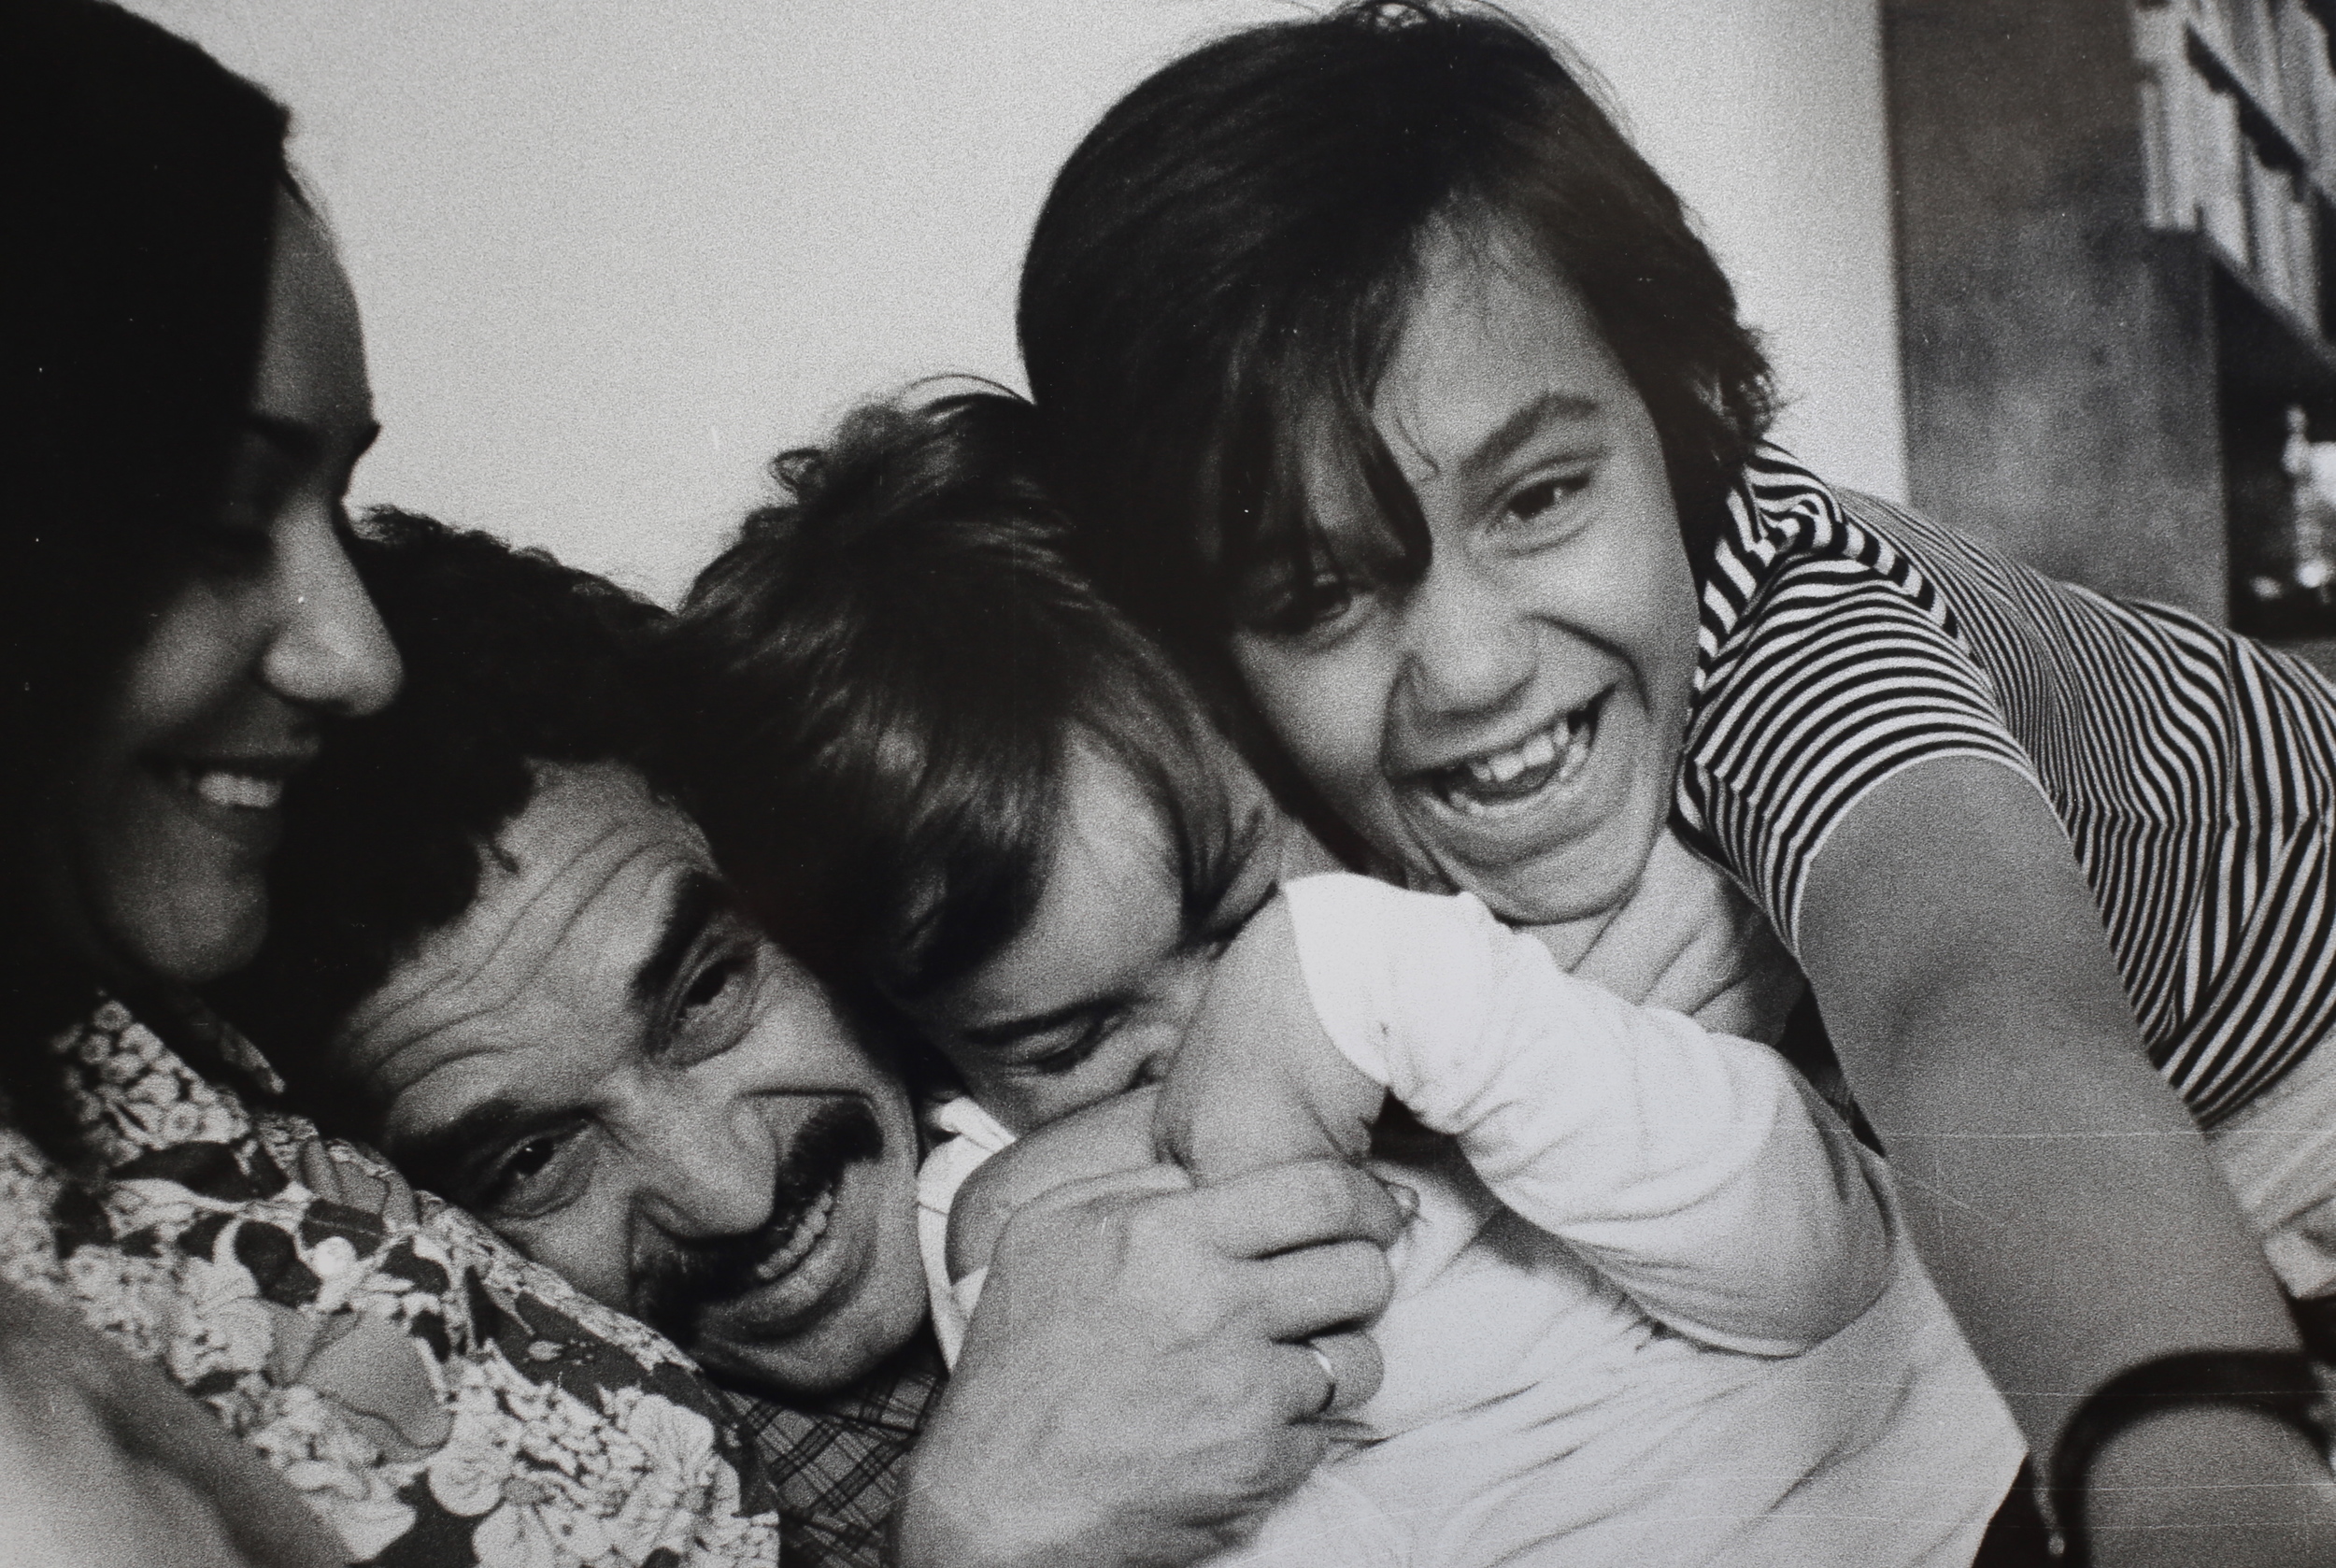   Gabriel García Márquez con la moglie Mercedes e i figli nella loro casa.&nbsp;Barcellona, 1969.  